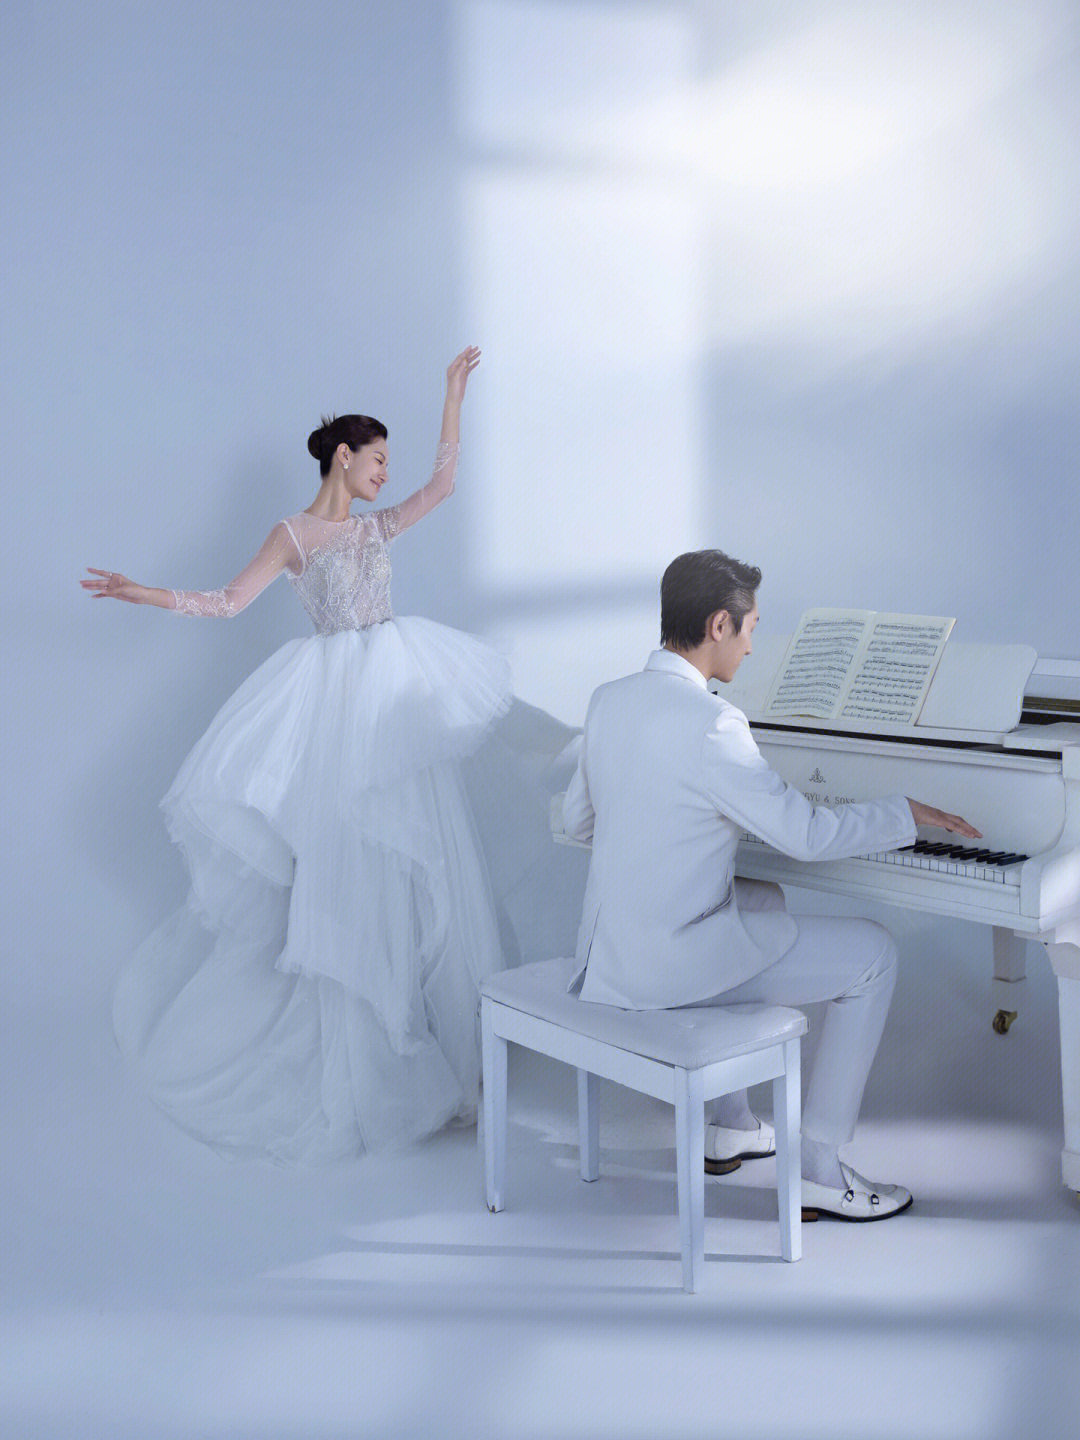 婚纱照的氛围感简直绝了好似月光倾泻入房间,唯美浪漫78白色的钢琴